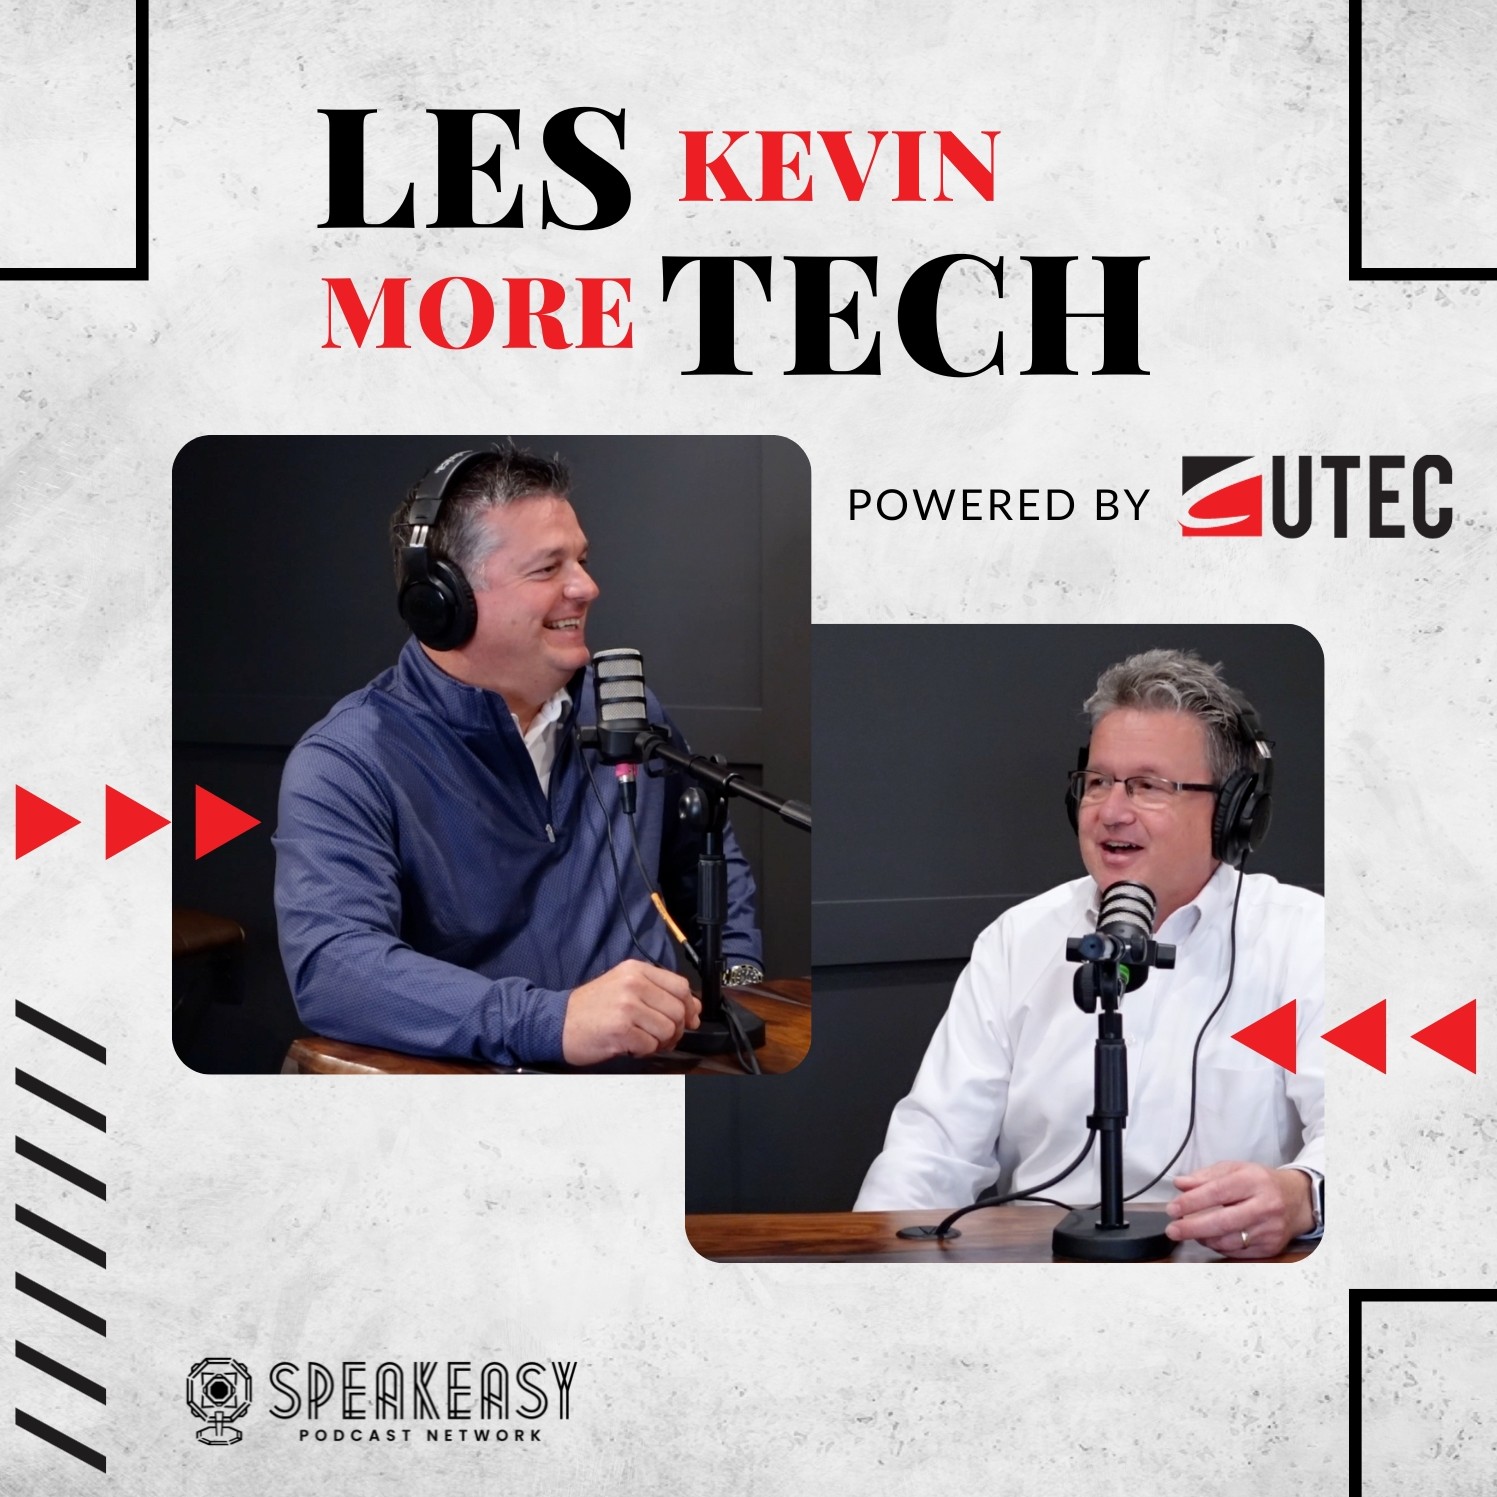 Les Kevin, More Tech